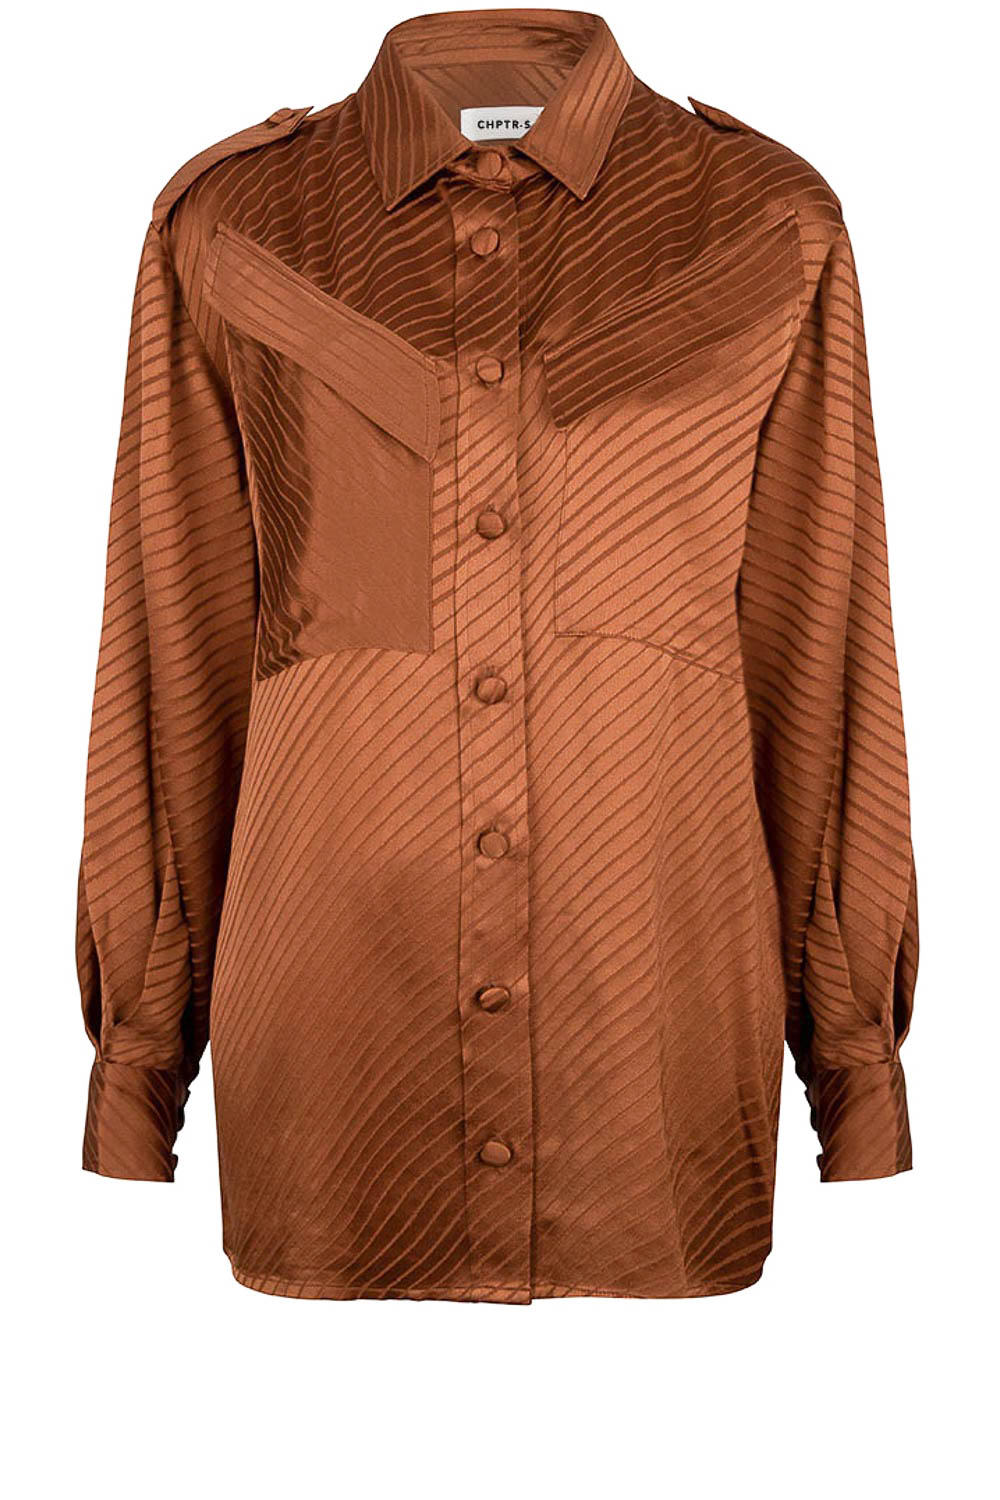 CHPTR S Luxe blouse Dolce bruin